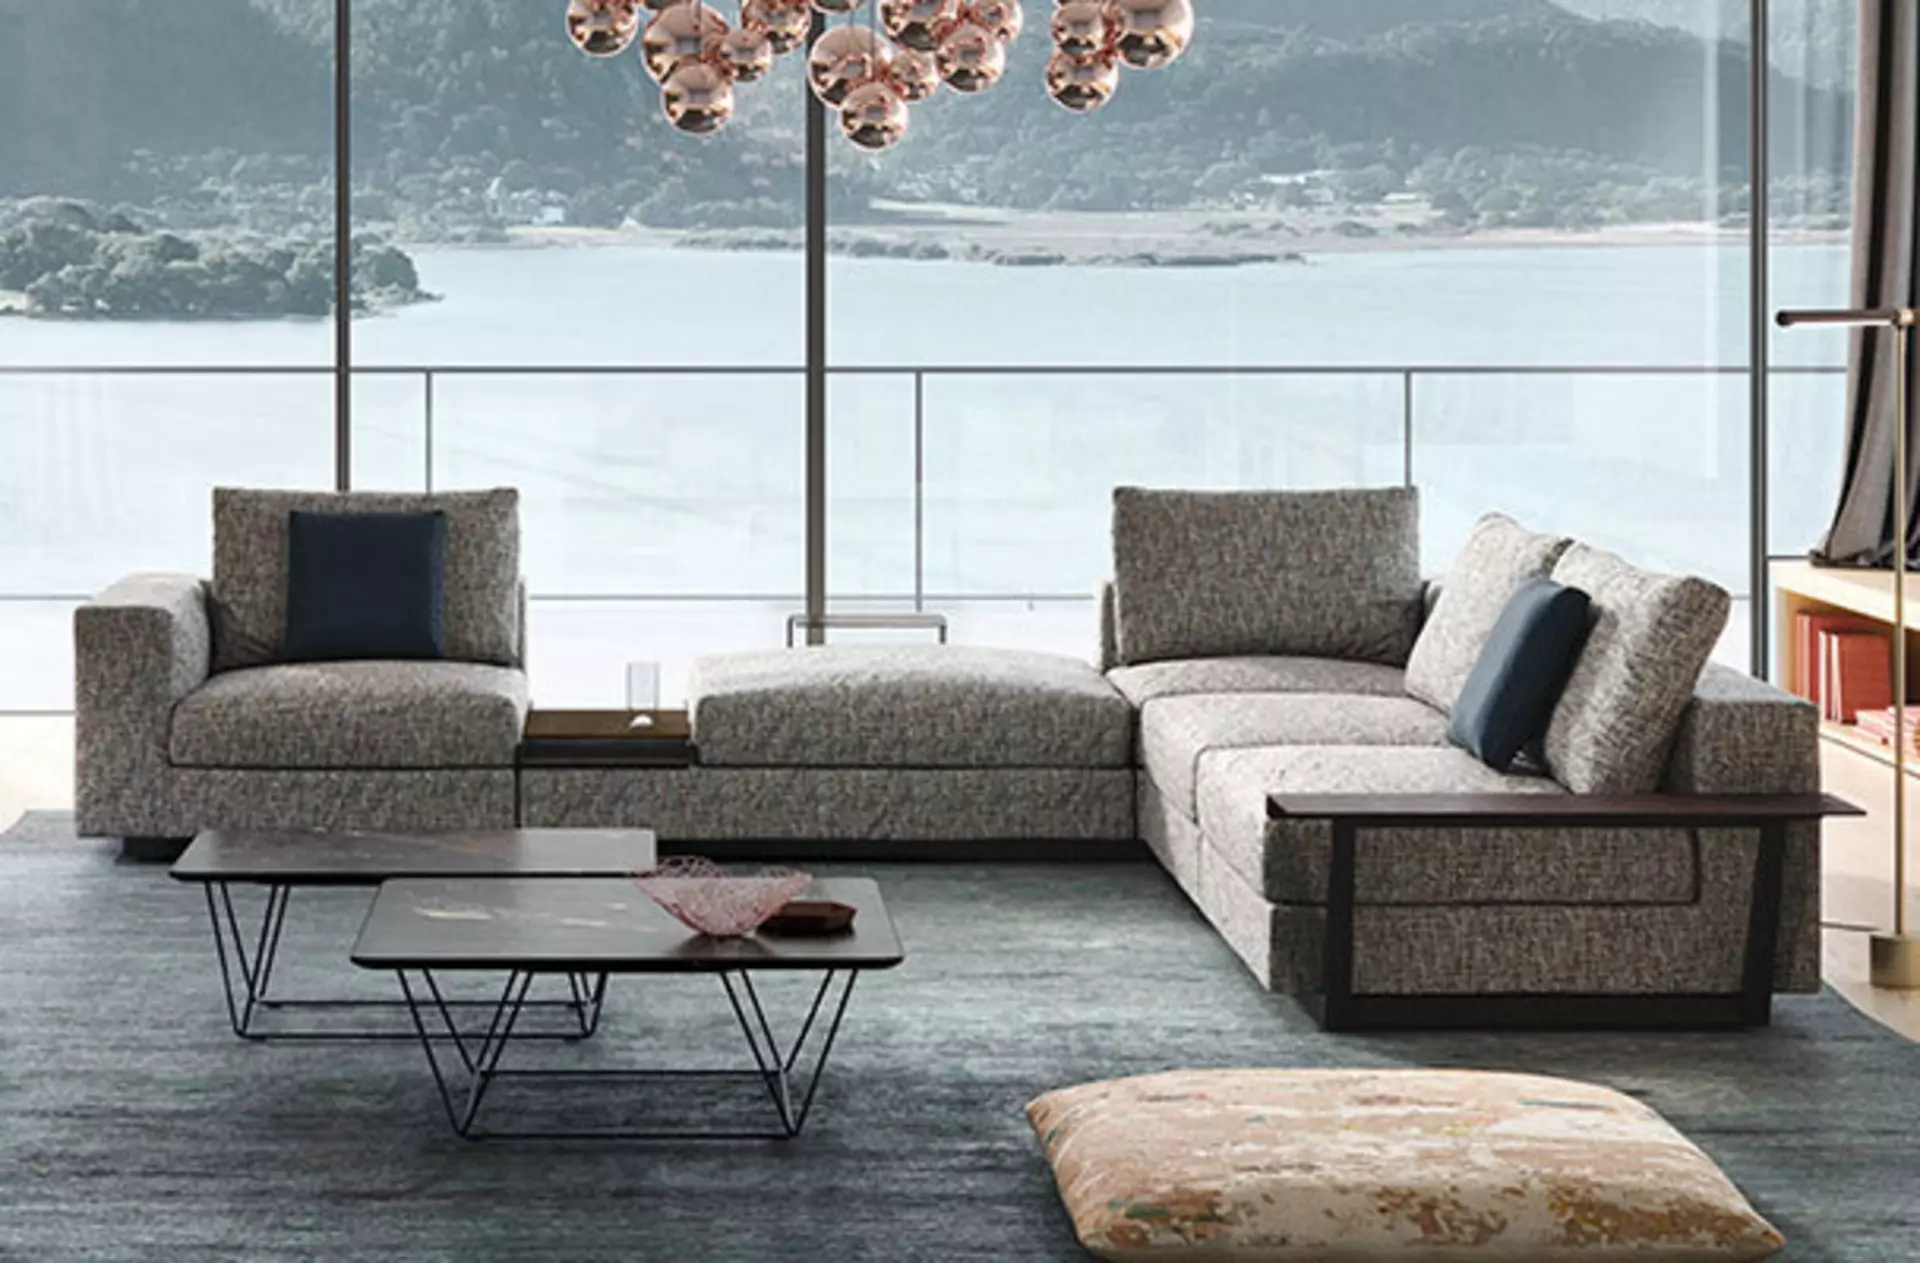 Beispiel für ein Design-Sofa